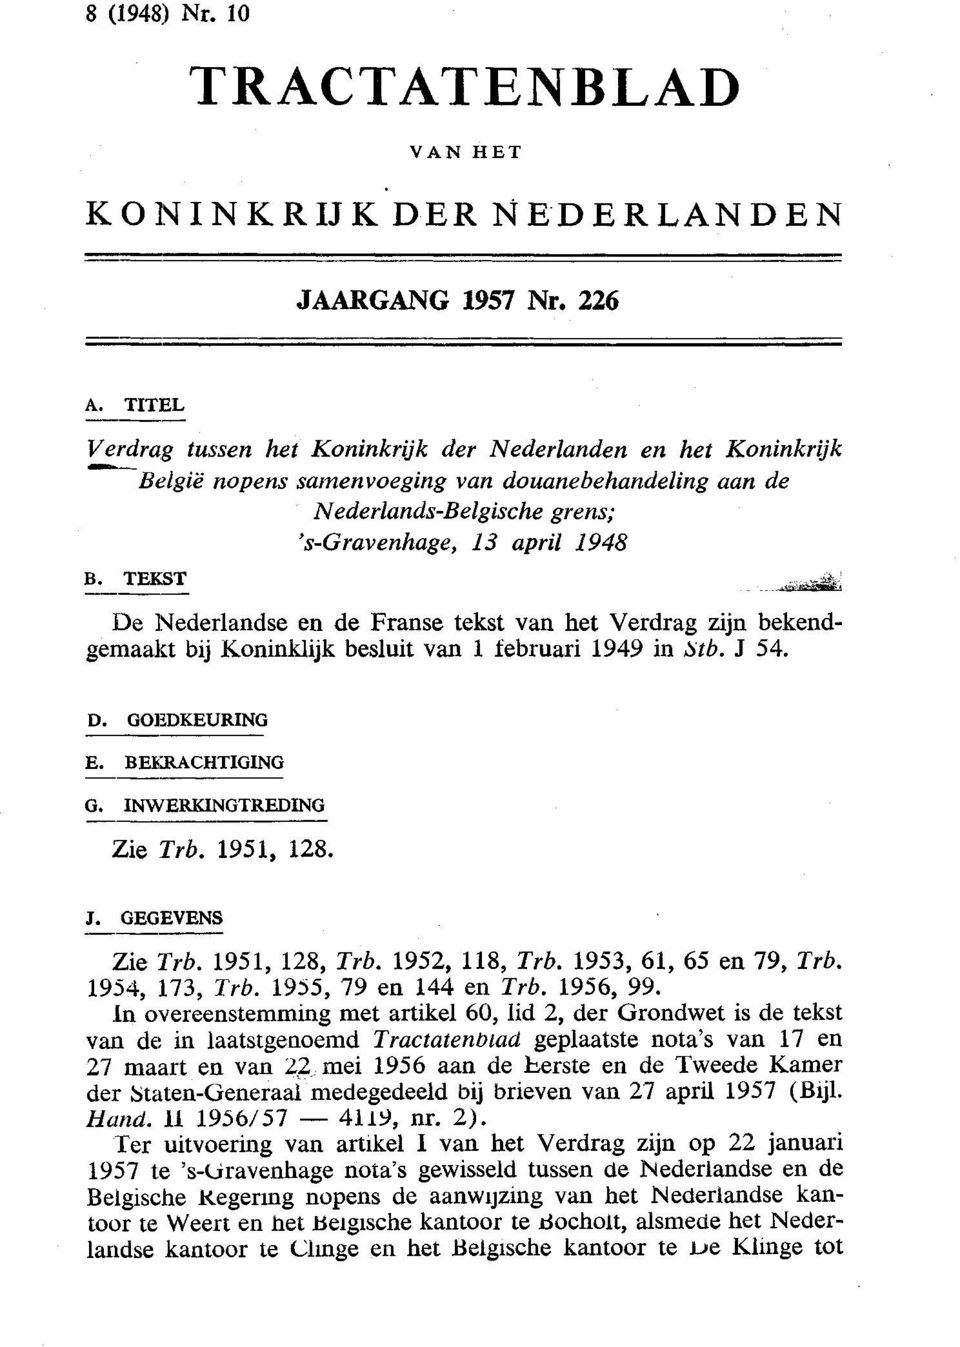 K*S&.. De Nederlandse en de Franse tekst van het Verdrag zijn bekendgemaakt bij Koninklijk besluit van 1 februari 1949 in Stb. J 54. D. GOEDKEURING E. BEEIRACHTIGING G. INWERKINGTREDING Zie Trb.